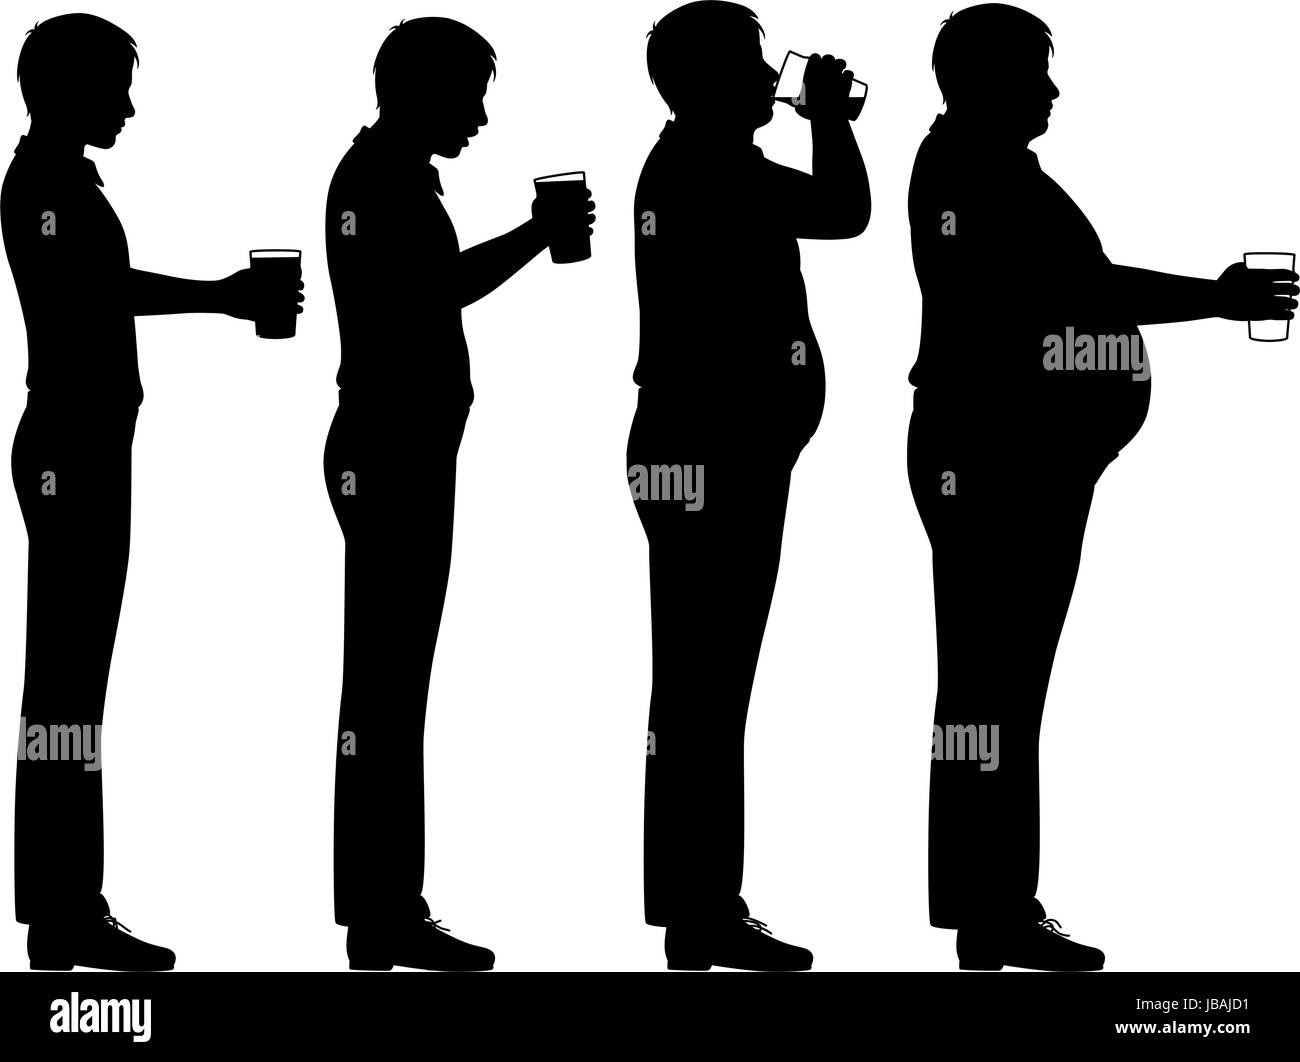 Bearbeitbares Vektor Silhouette Sequenz eines Mannes Bier trinken und Übergewicht Stock Vektor